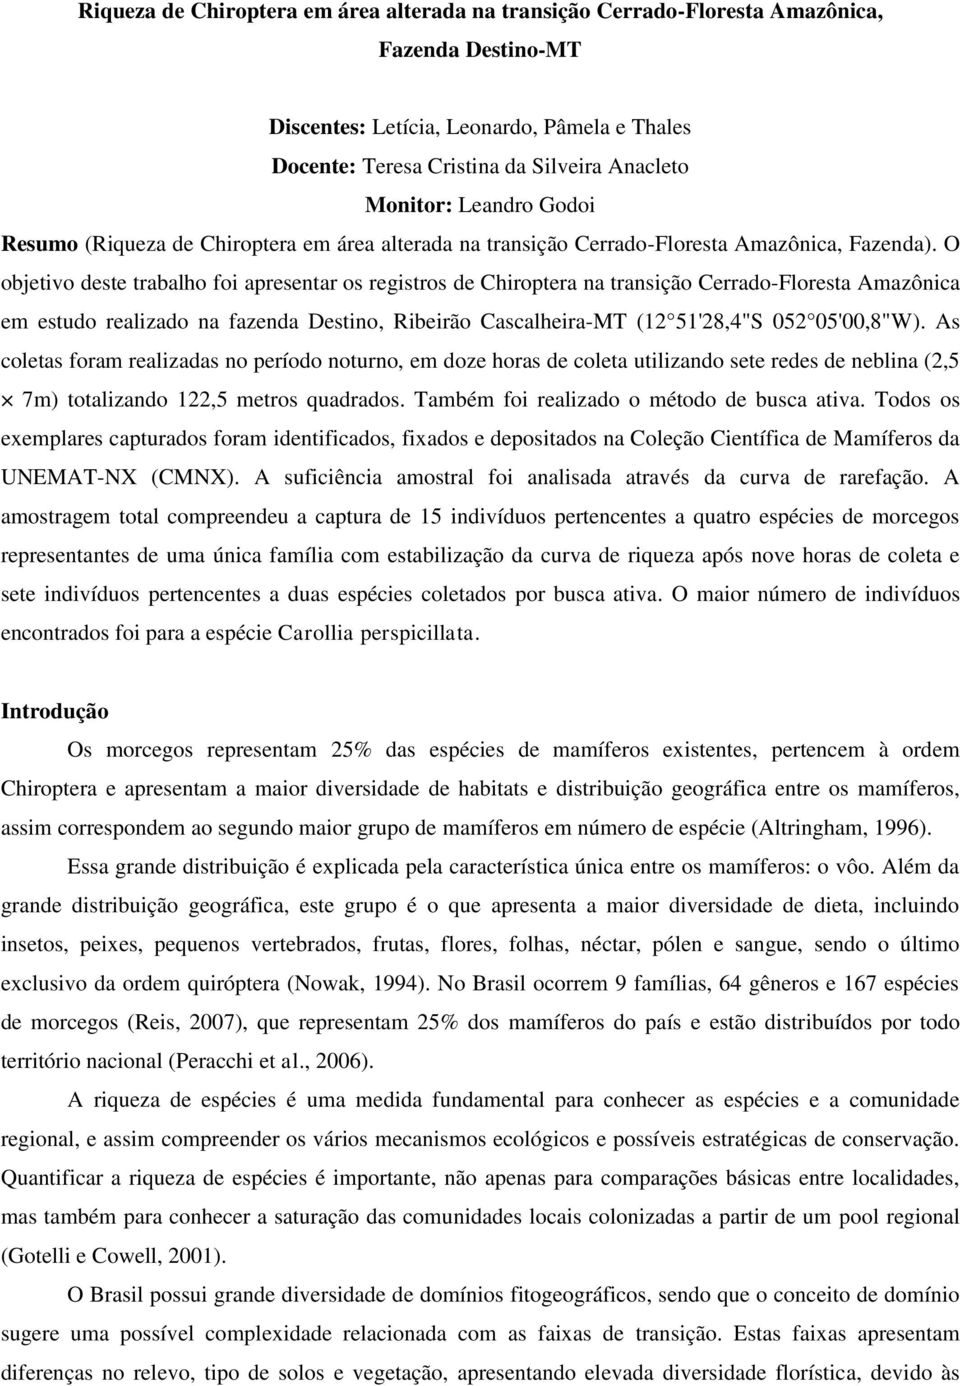 O objetivo deste trabalho foi apresentar os registros de Chiroptera na transição Cerrado-Floresta Amazônica em estudo realizado na fazenda Destino, Ribeirão Cascalheira-MT (12 51'28,4"S 052